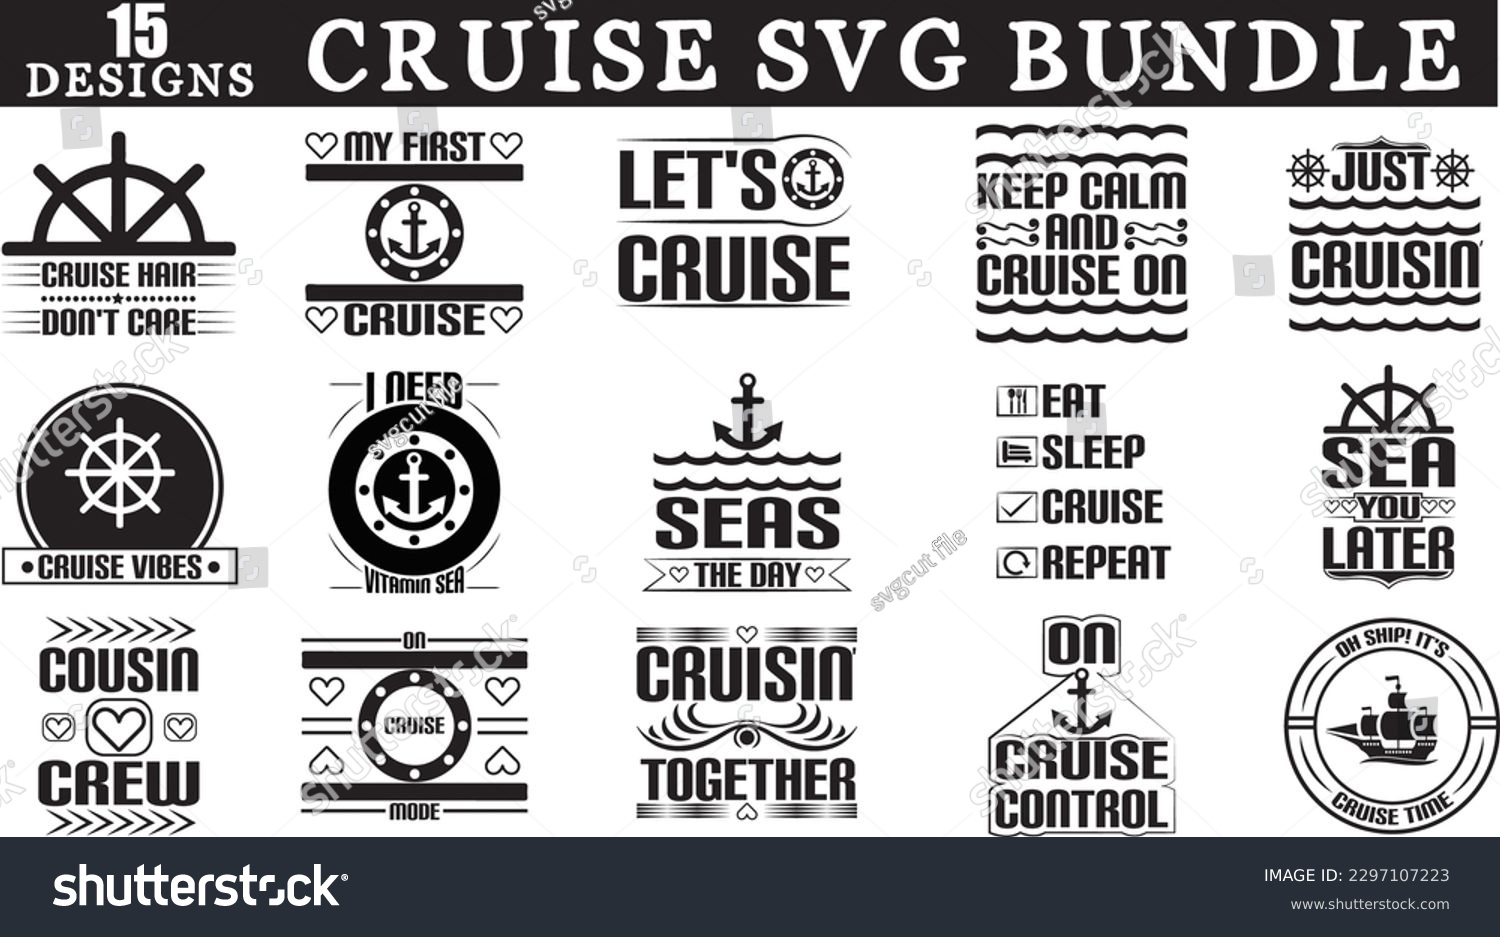 SVG of Cruise svg bundle, Cruise svg design svg